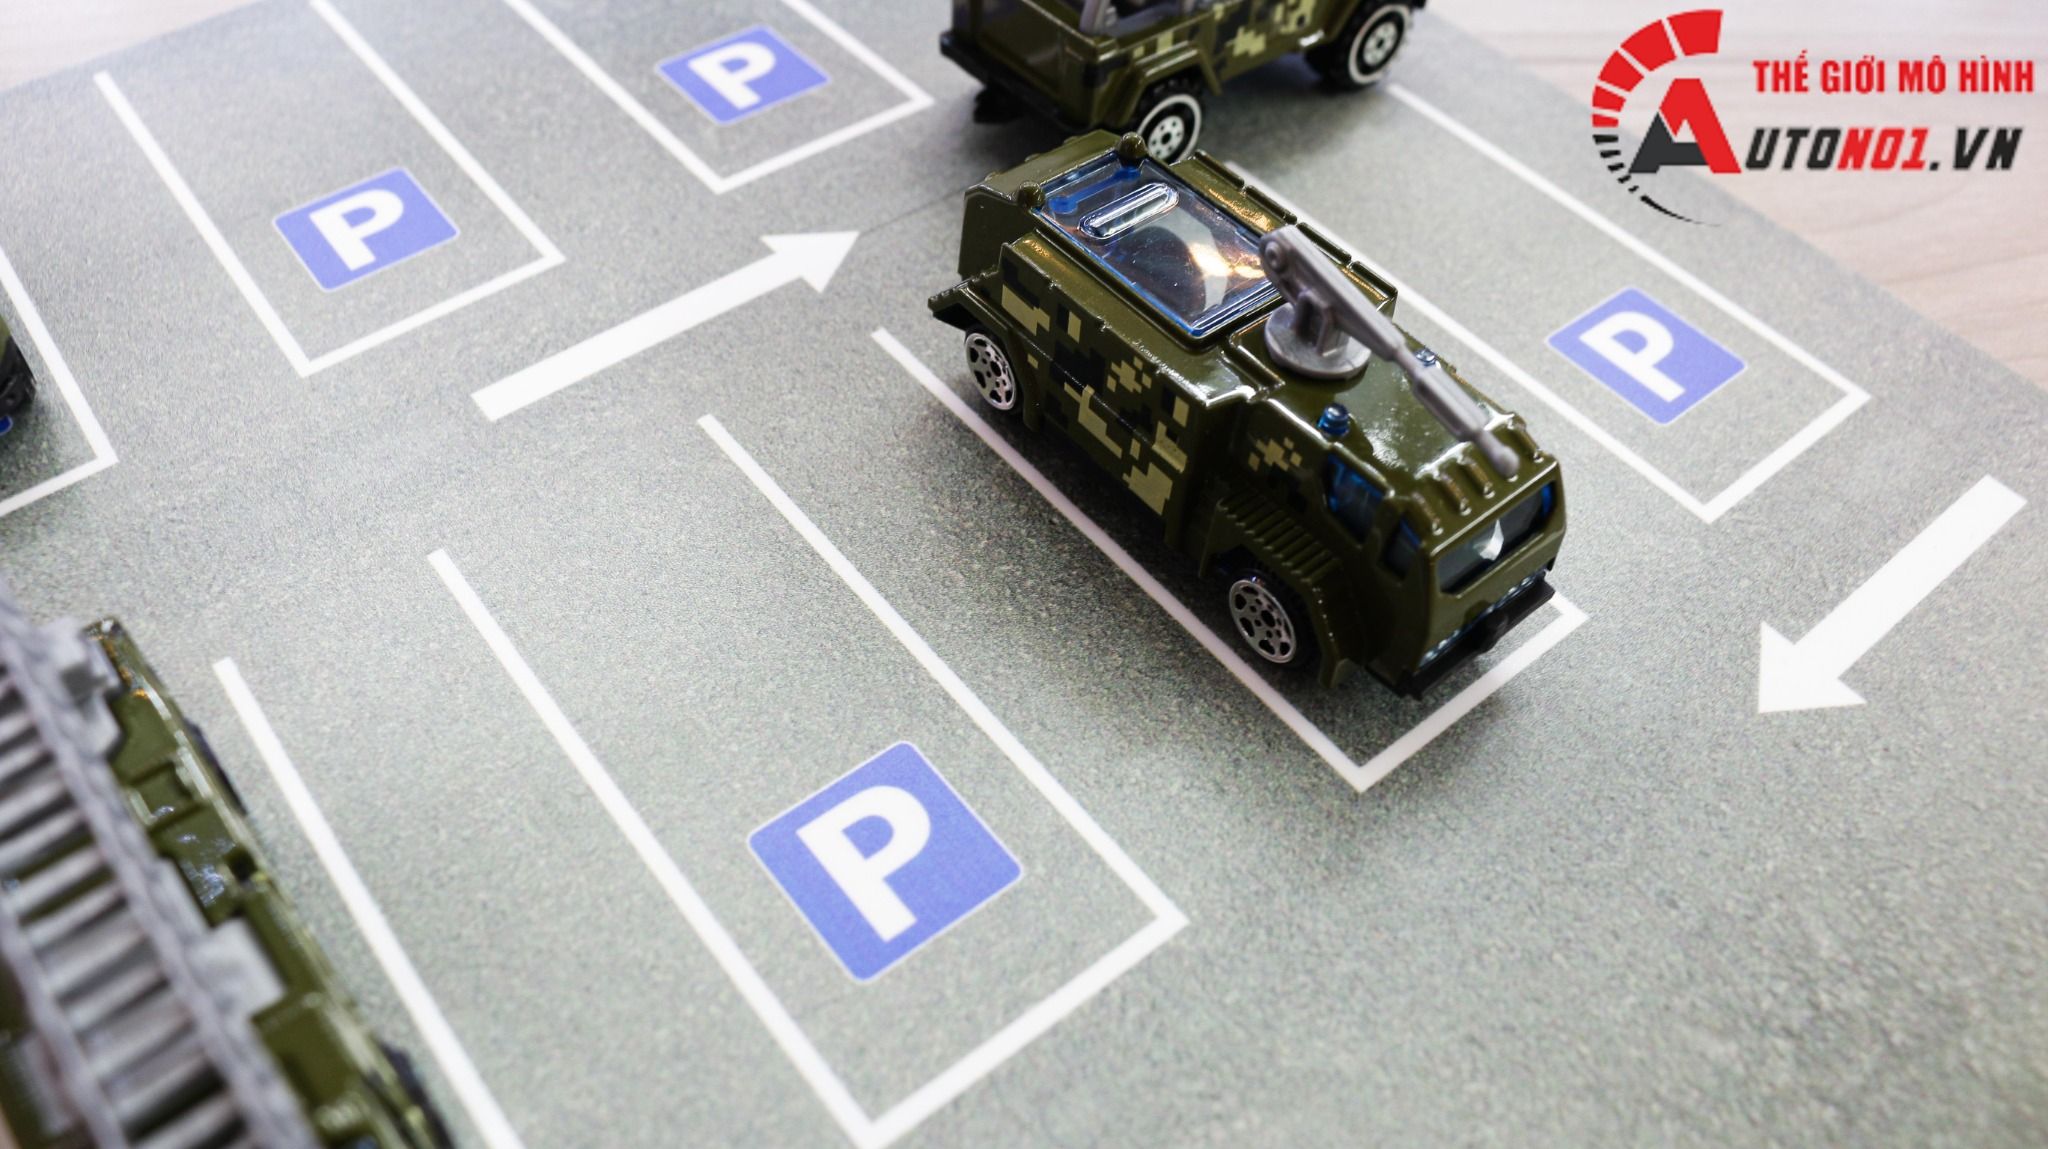  Diorama mặt đường - parking kích thước 30x30cm cho ô tô tỉ lệ 1:64 Autono1 DR012 